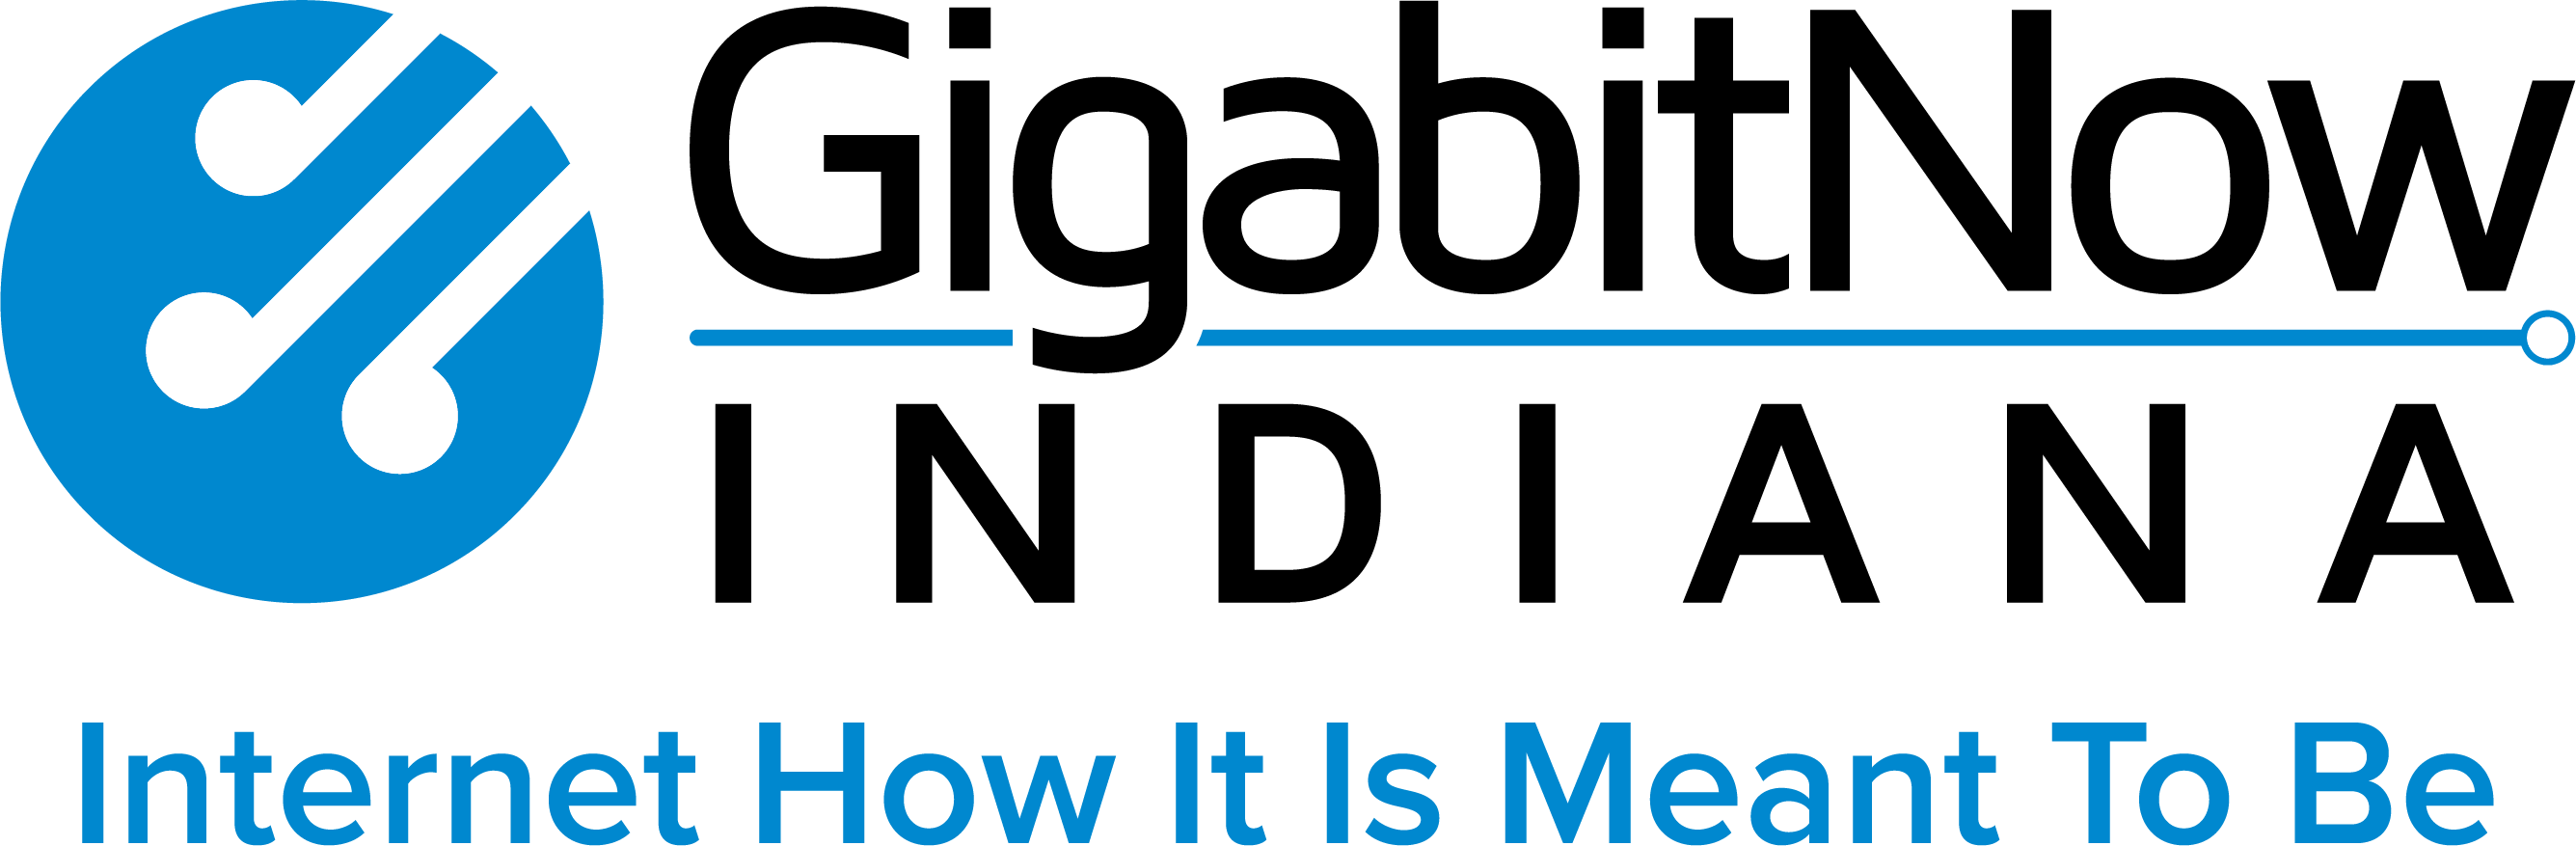 GigabitNow Indiana logo with tagline